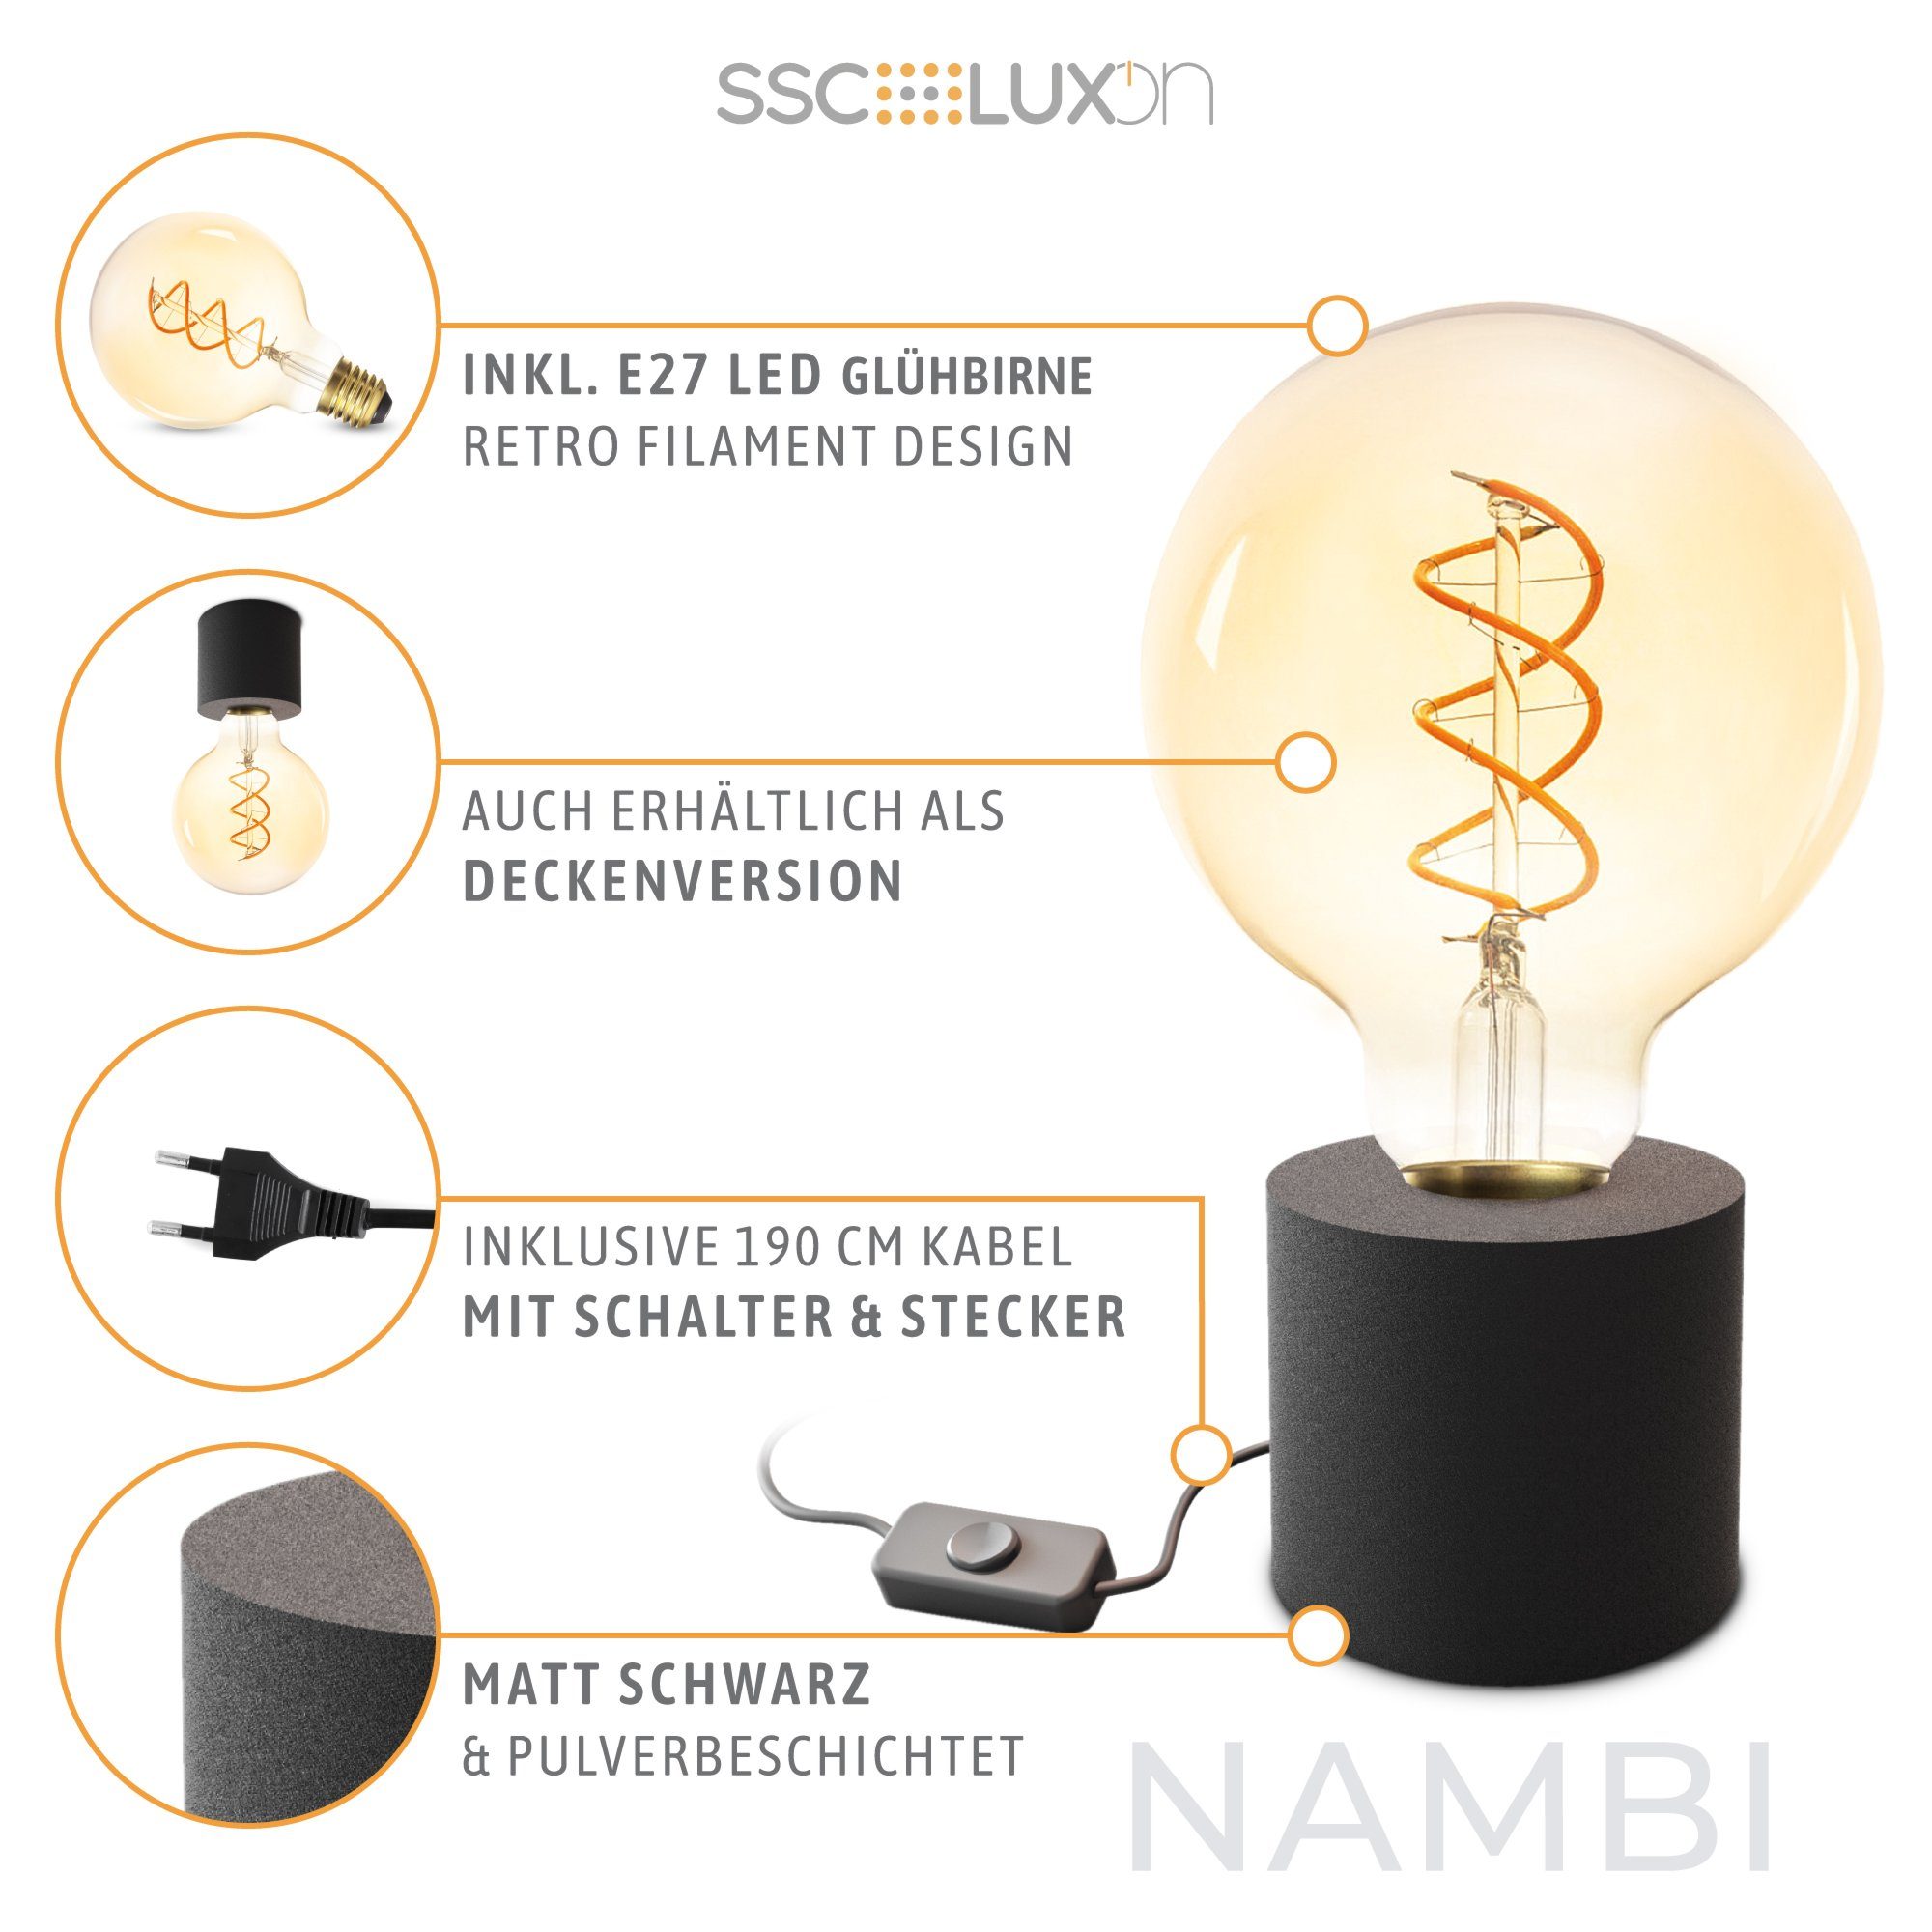 SSC-LUXon LED Bilderleuchte Tischlampe & Stecker schwarz Kabel & E27, mit mit NAMBI LED Wand- Warmweiß